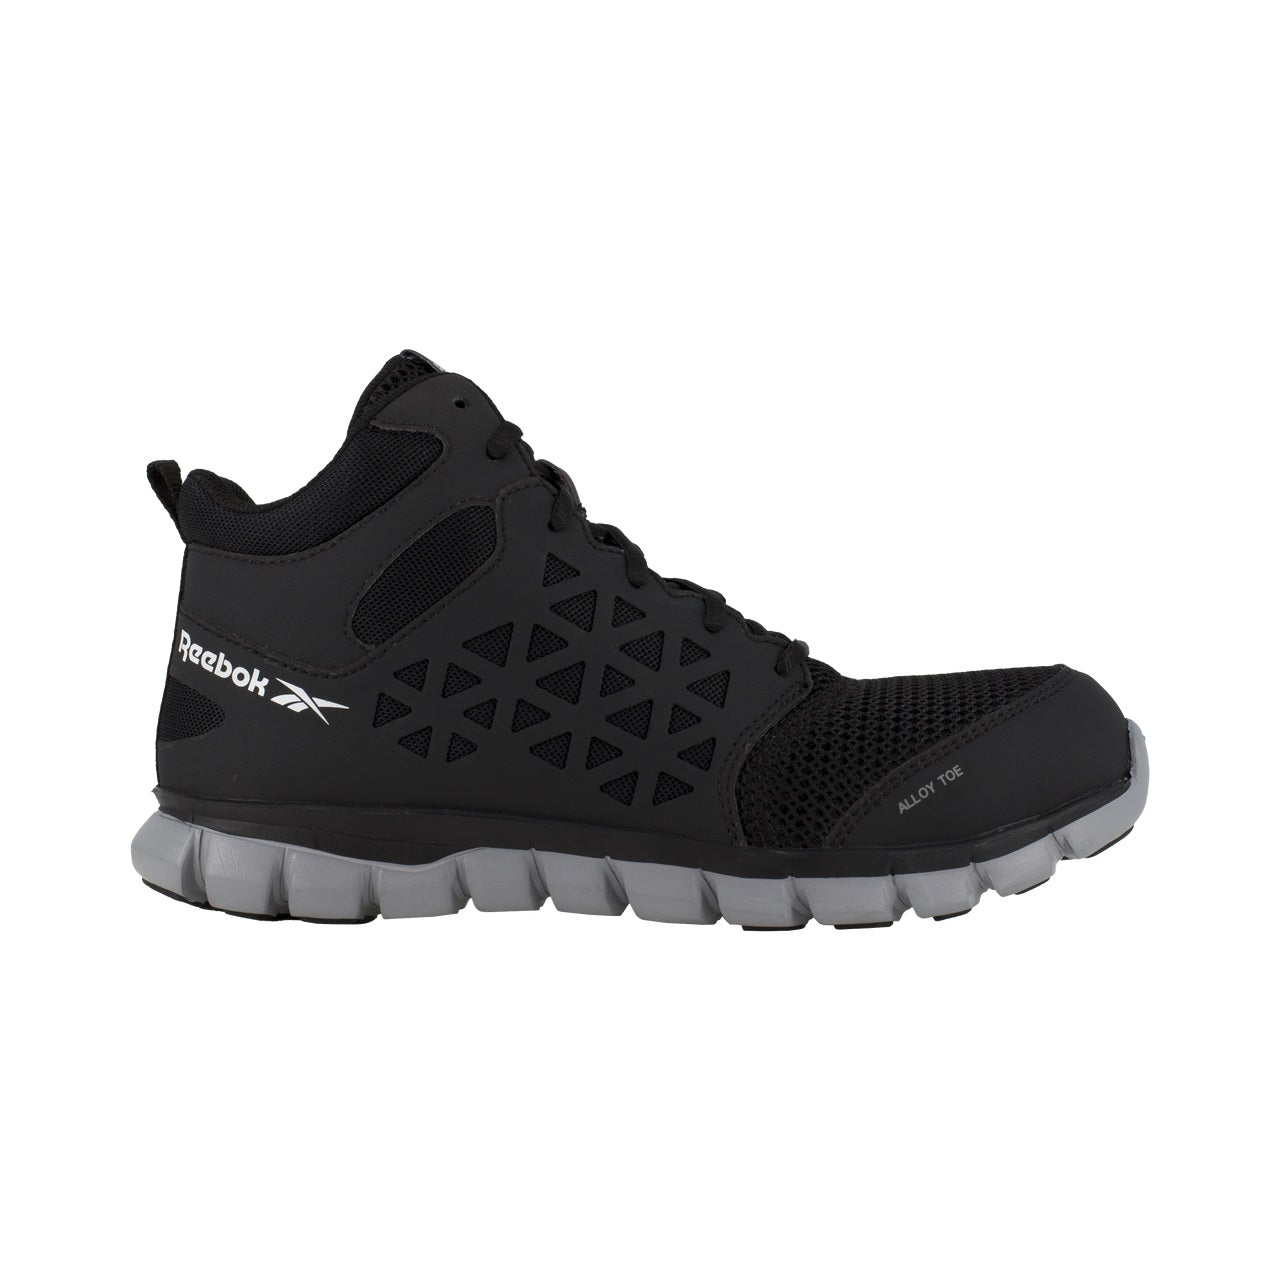 Reebok Men's Sublite Mid-Cut Alloy Toe Black Athletic Shoes RB4141